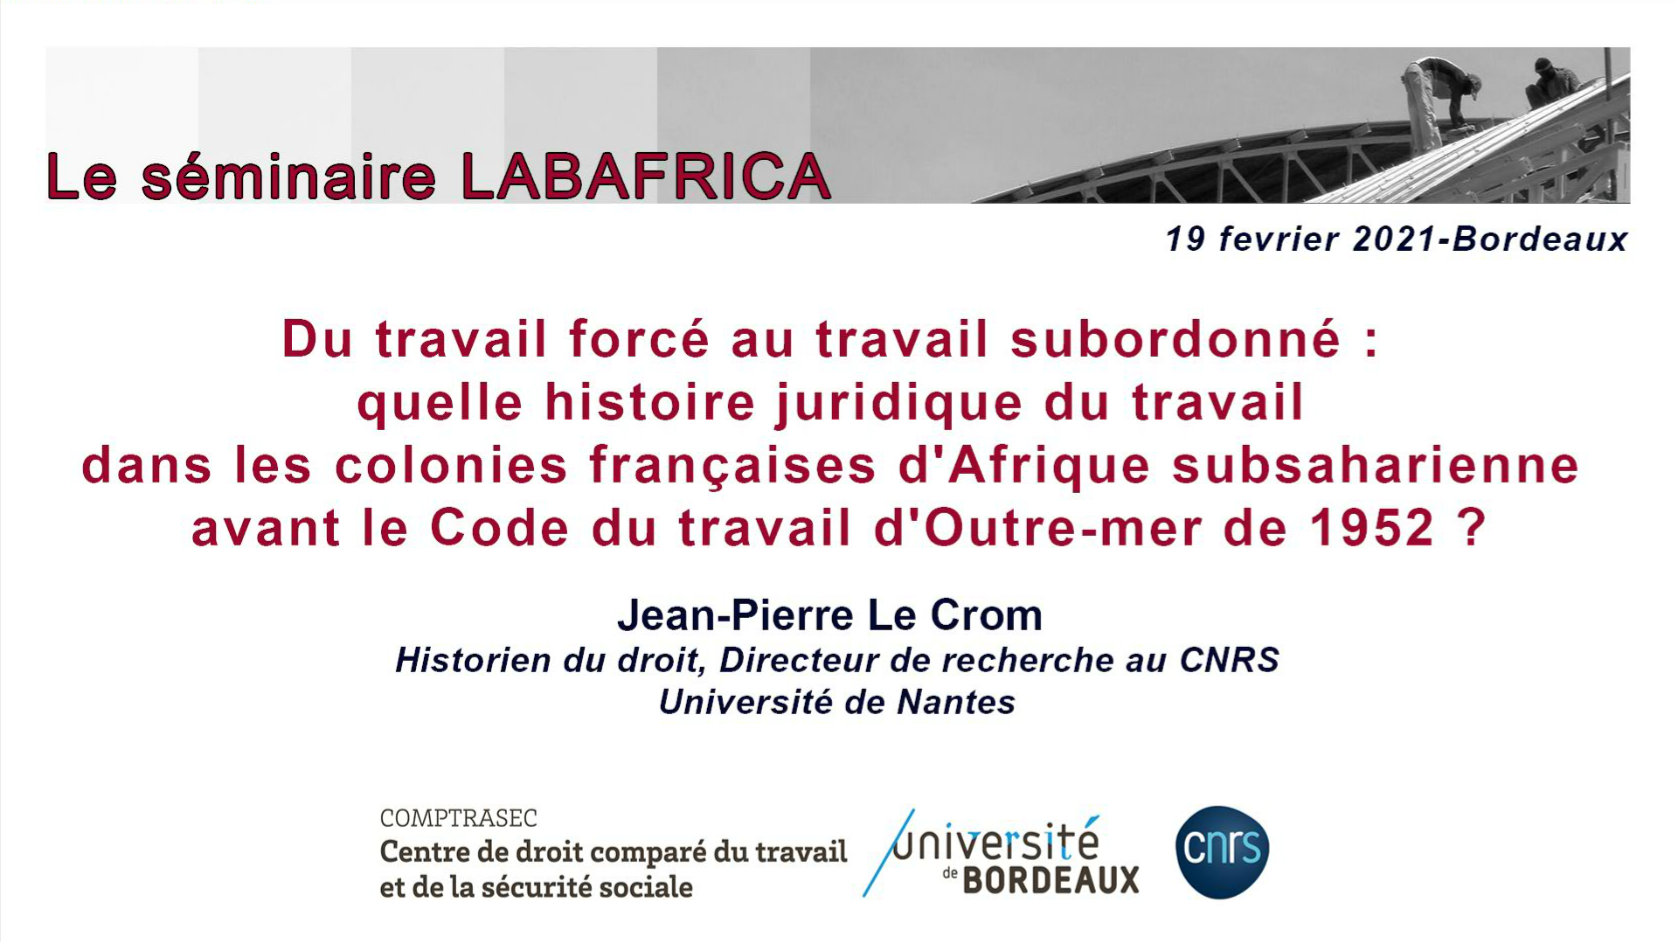 Du travail forcé au travail subordonné : quelle histoire juridique du travail dans les colonies françaises d'Afrique subsaharienne avant le Code du travail d'Outre-mer de 1952 ?